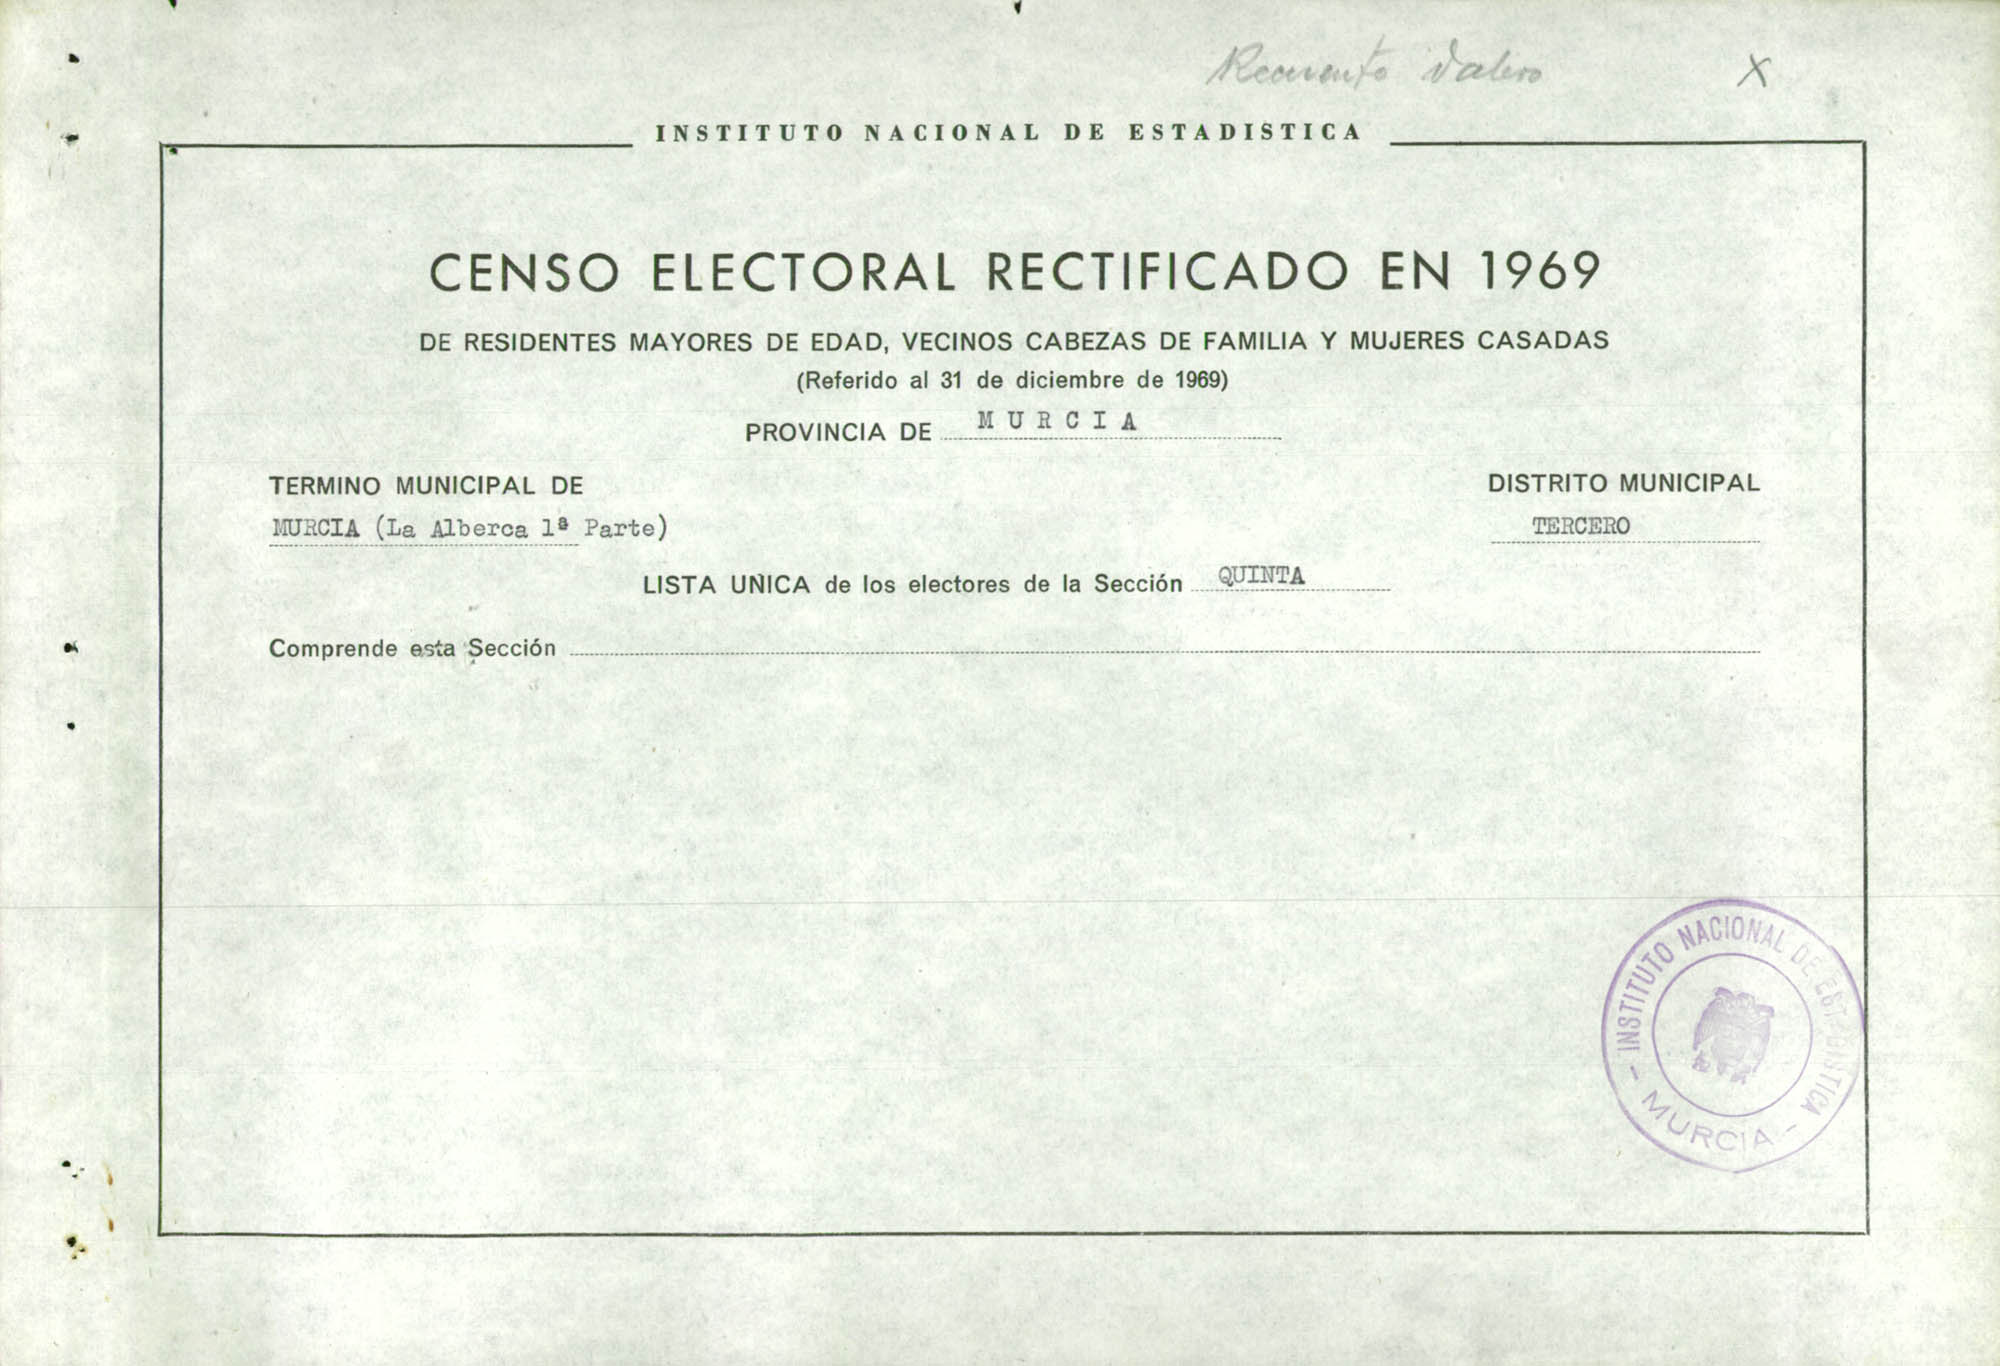 Censo electoral rectificado en 1969: listas definitivas de Murcia, Distrito 3º, sección 5ª.